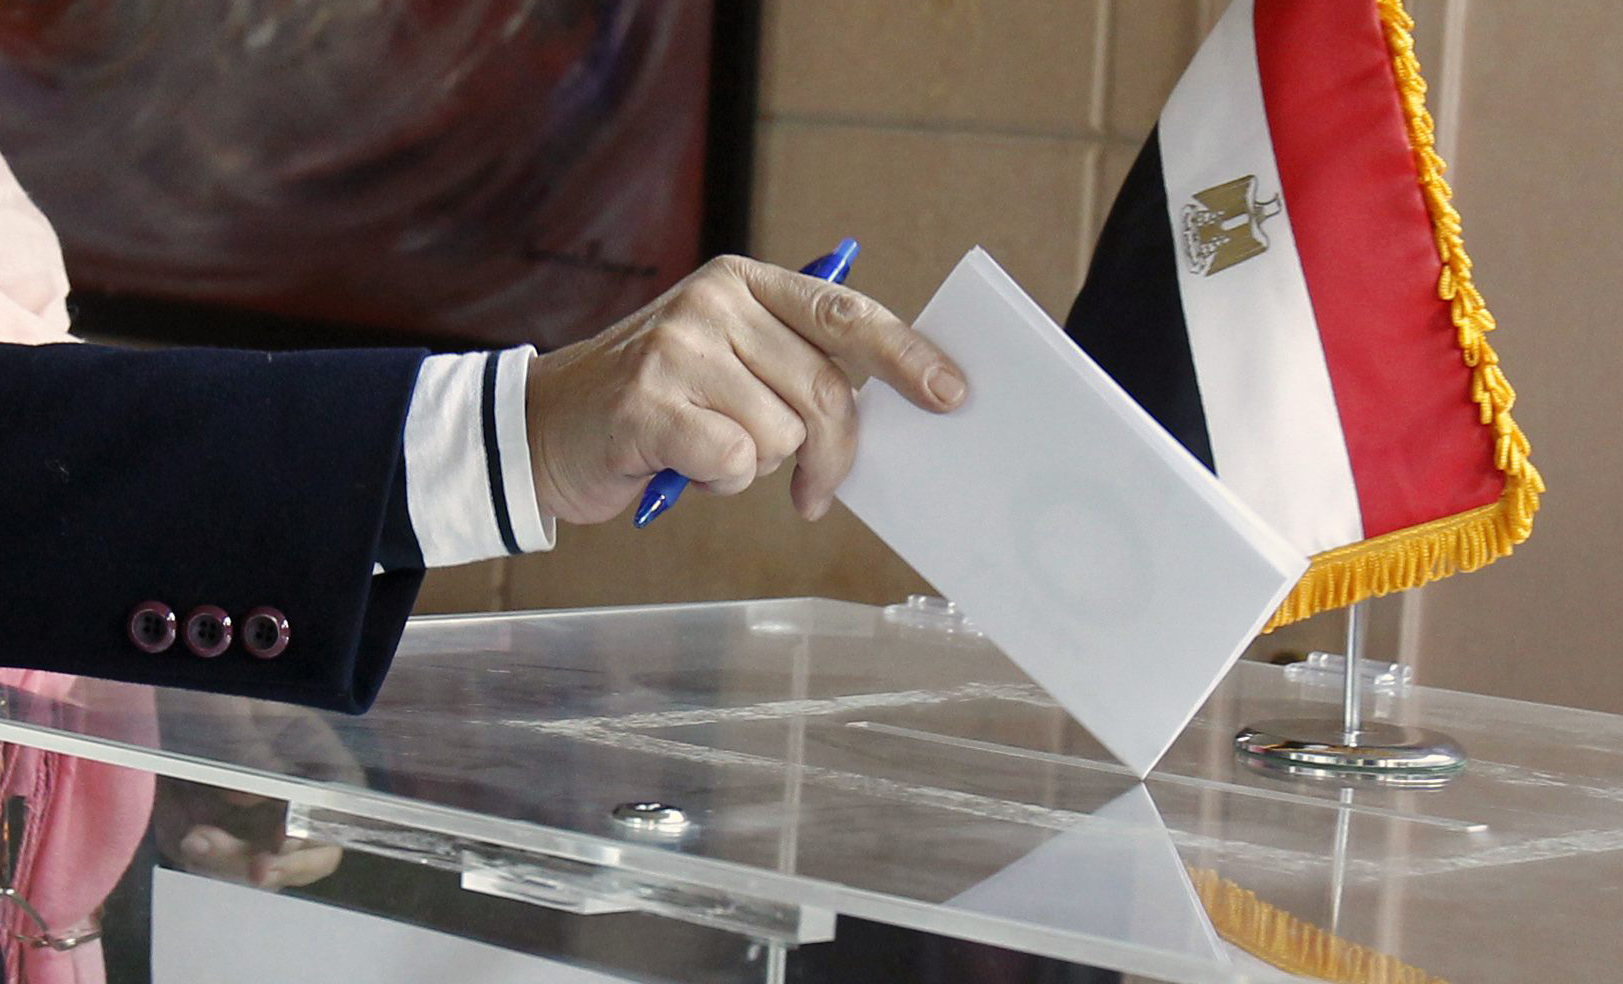   بعد قليل.. اللجان تفتح أبوابها لاستقبال الناخبين للإدلاء بأصواتهم في انتخابات إعادة مجلس الشيوخ